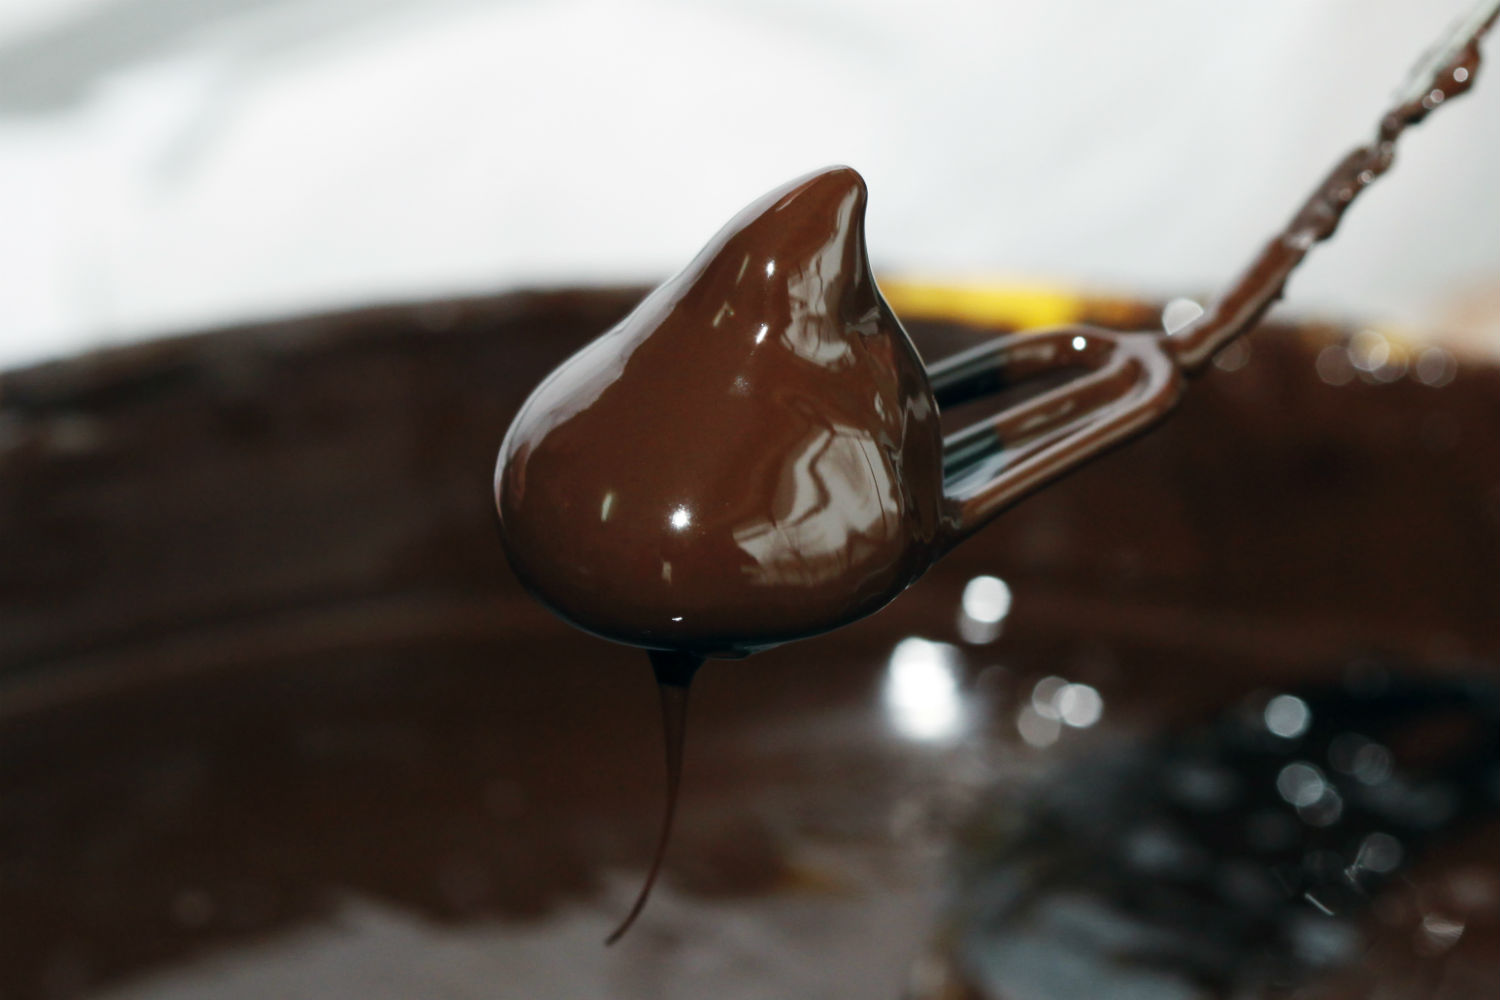 Crean un nuevo chocolate suizo que alivia los dolores menstruales